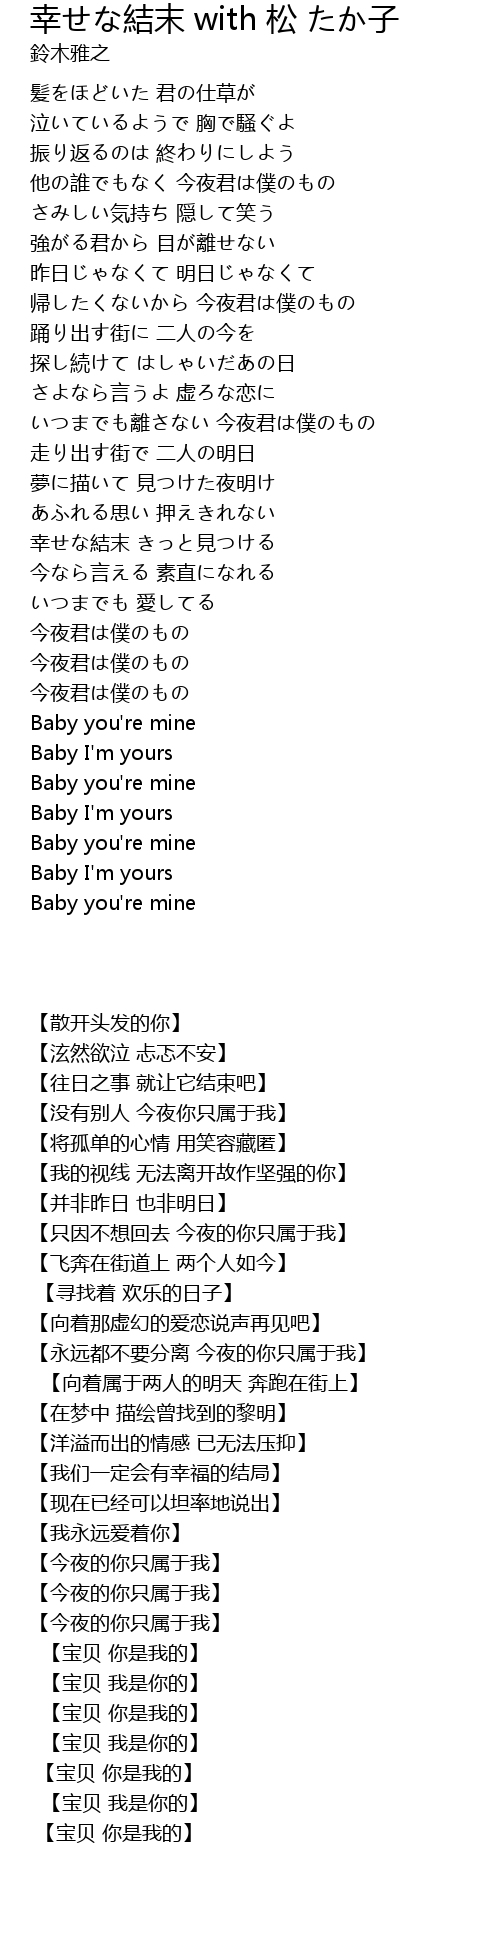 幸せな結末 With 松 たか子 Xing Jie Mo With Song Zi Lyrics Follow Lyrics